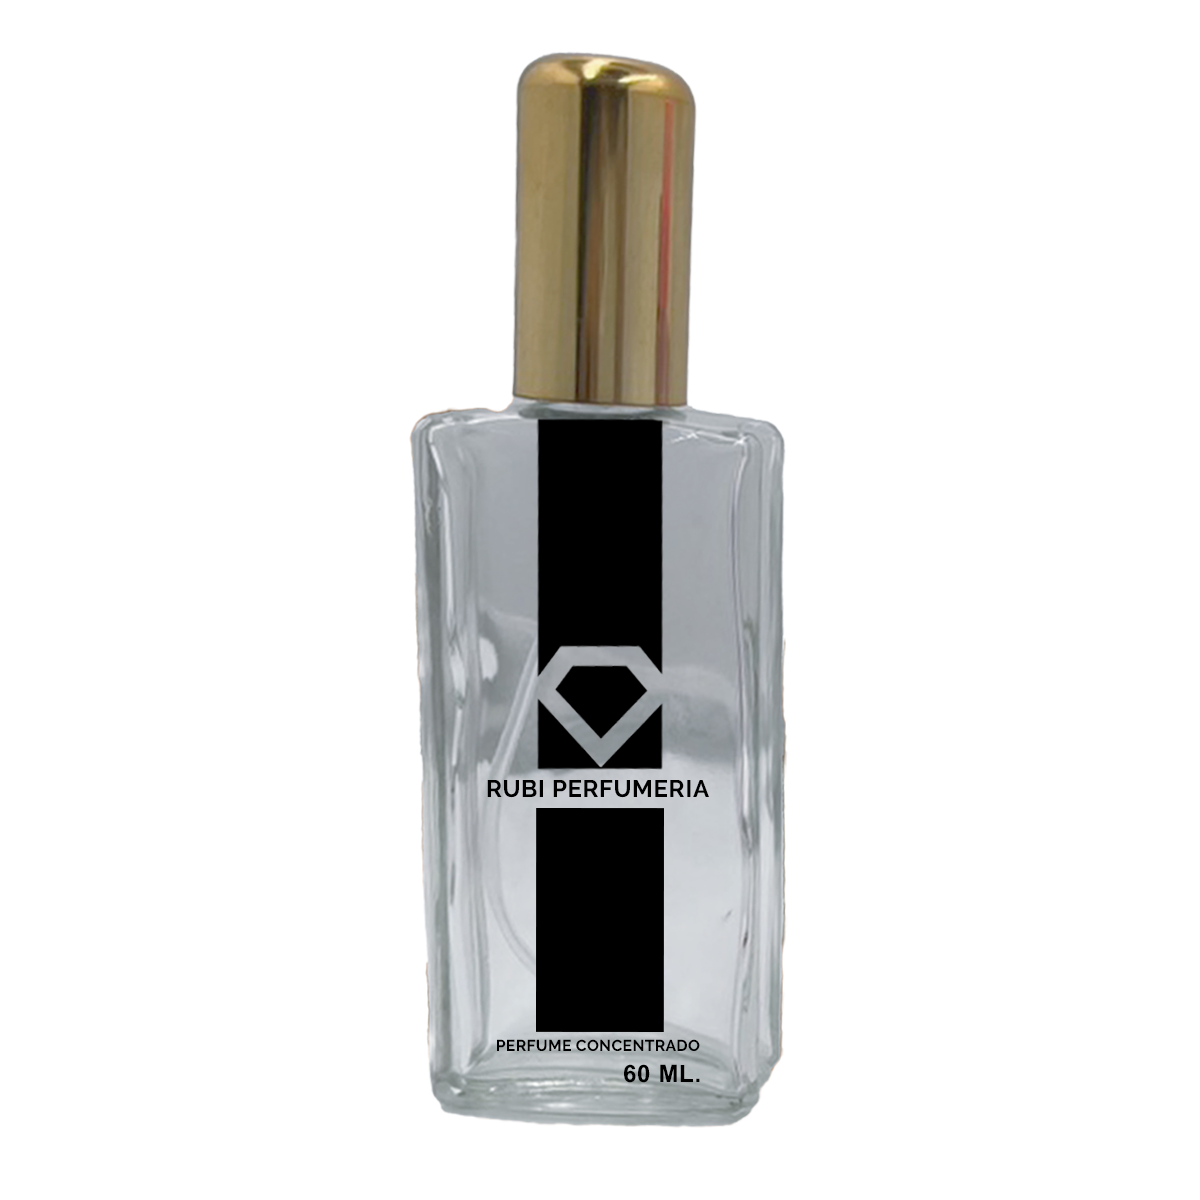 Perfume de aceite Louis Vuitton l'immensite para hombres, perfume